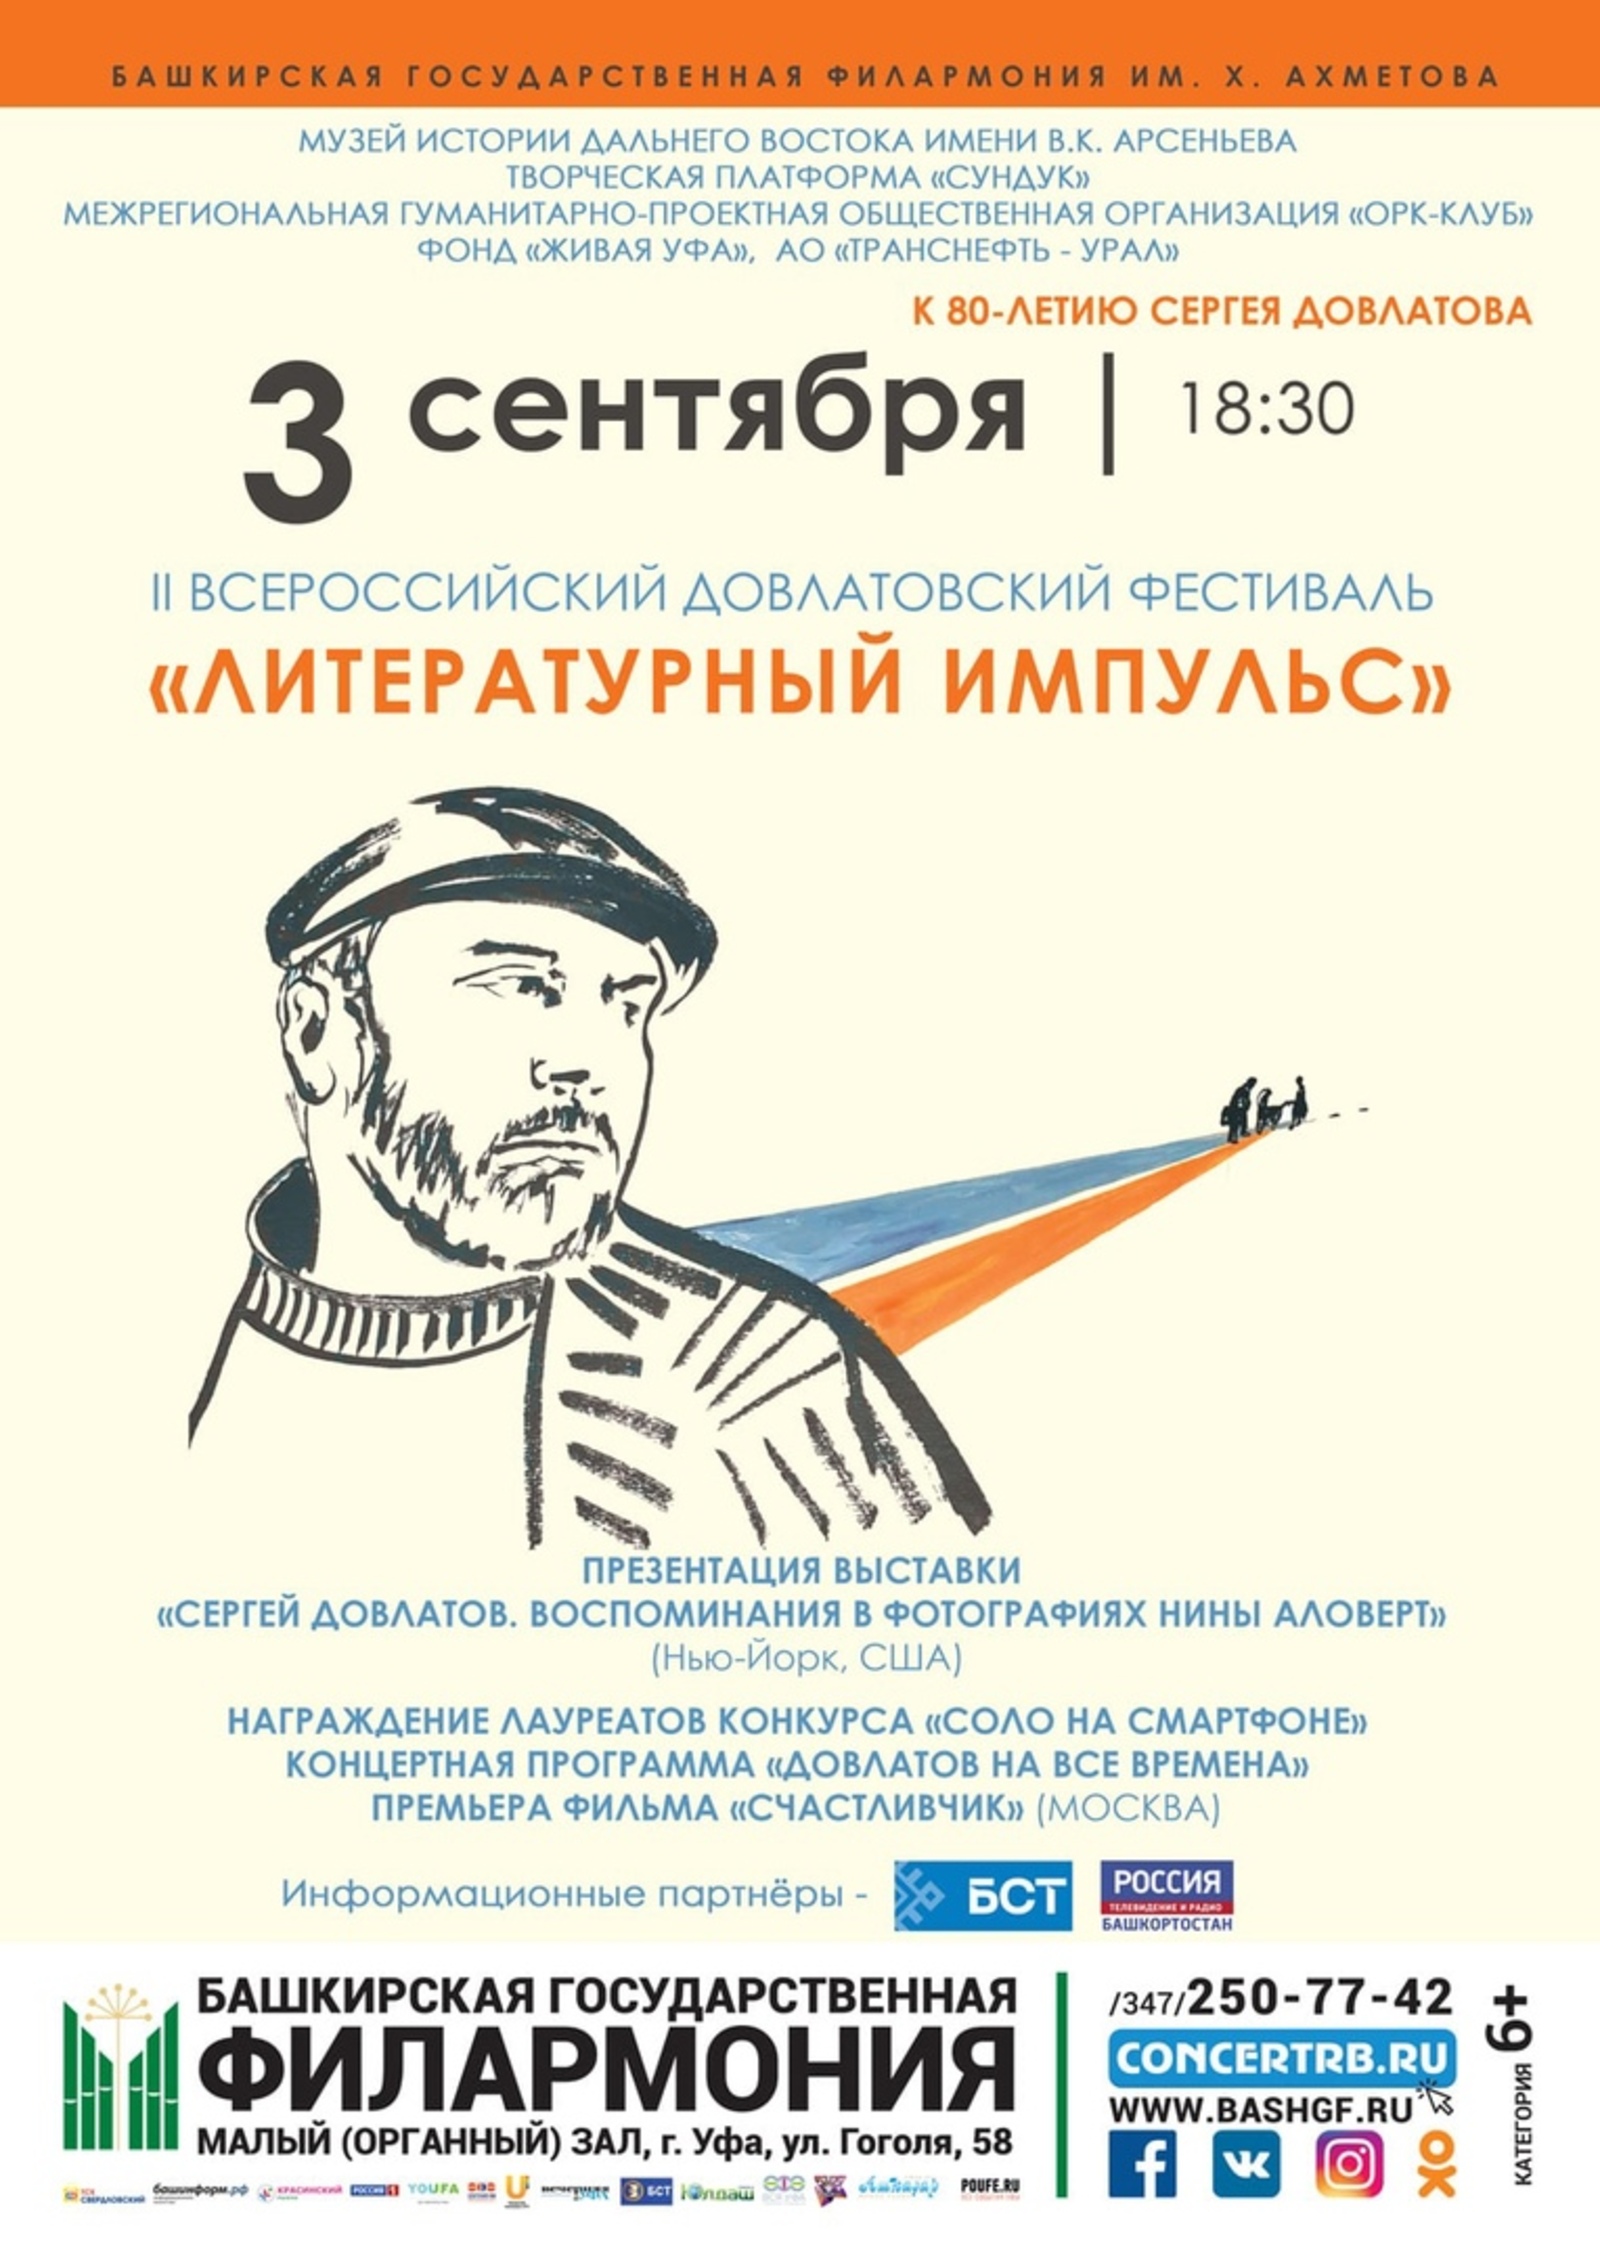 II Всероссийский Довлатовский фестиваль «Литературный импульс» состоится в Уфе